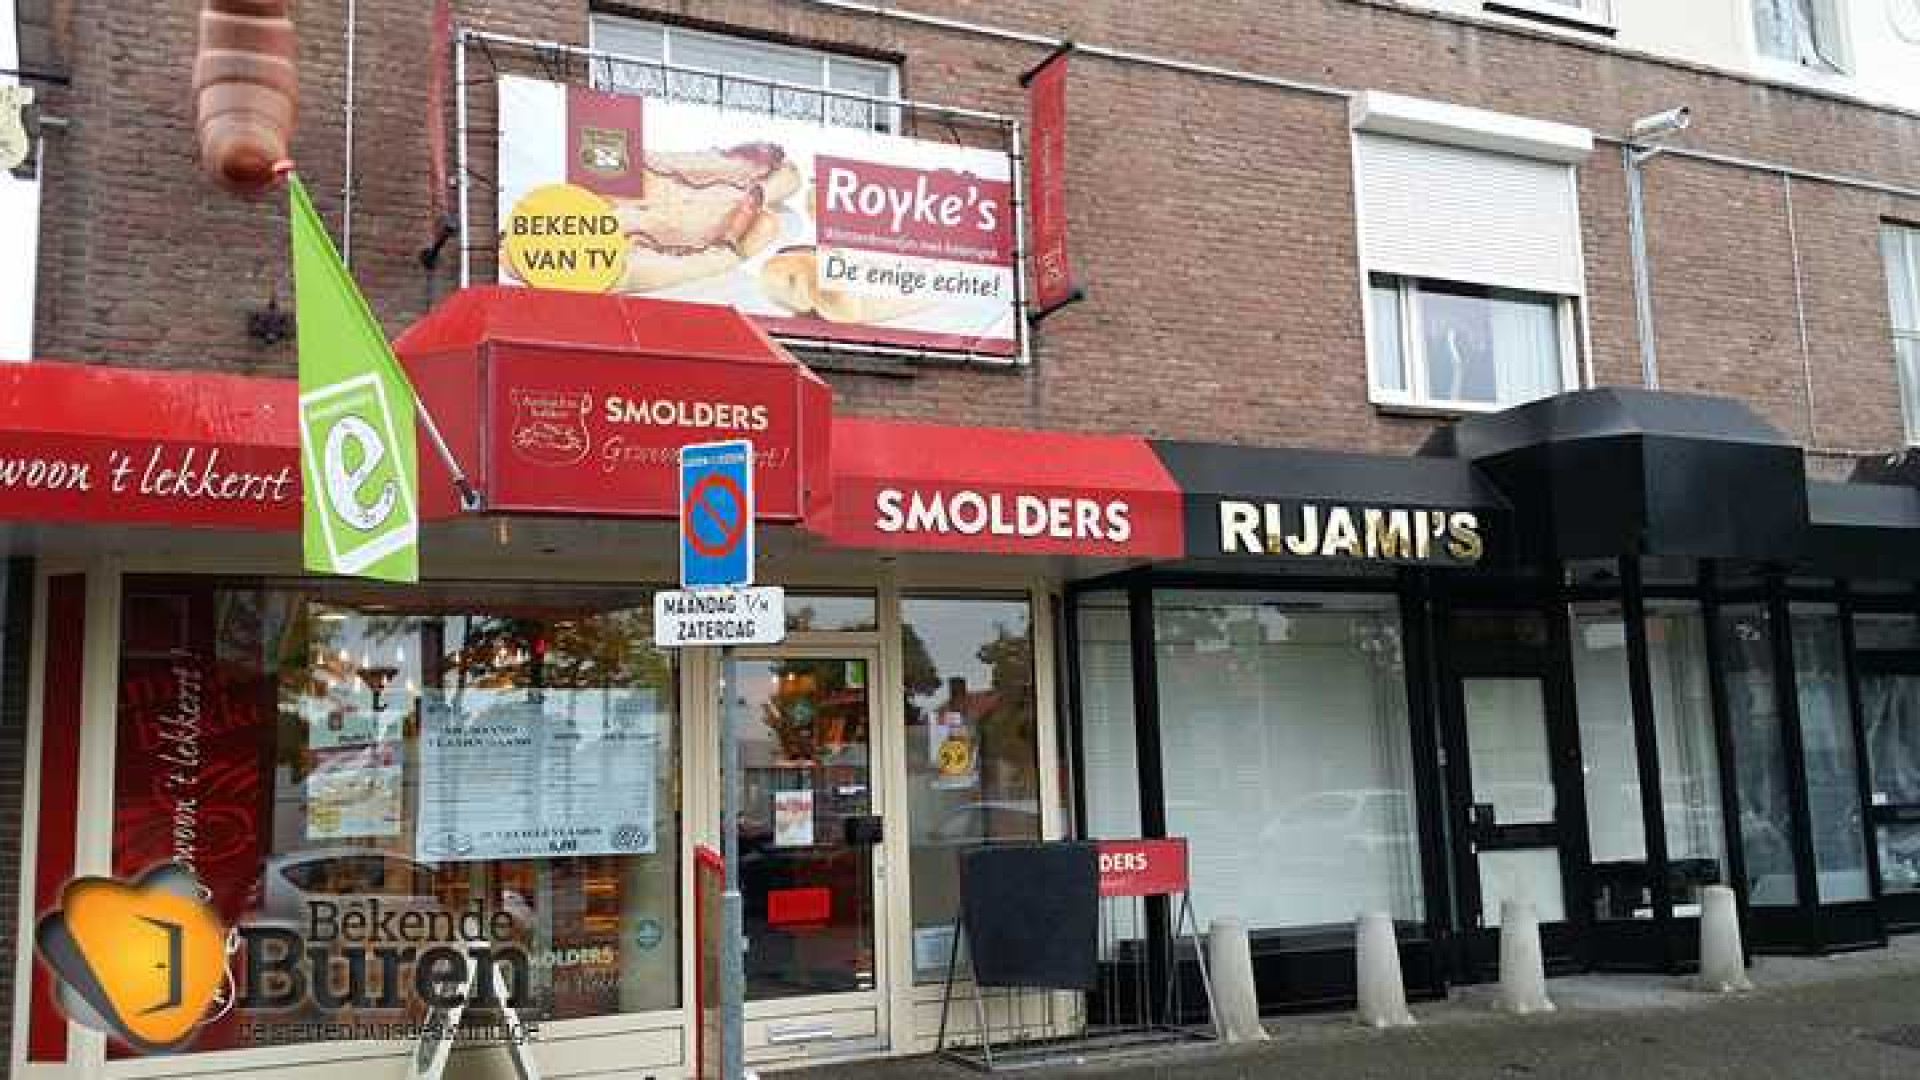 Roy Donders verdient aan verkoop van de worstenbroodjes. Hier het bewijs. Zie foto's 4